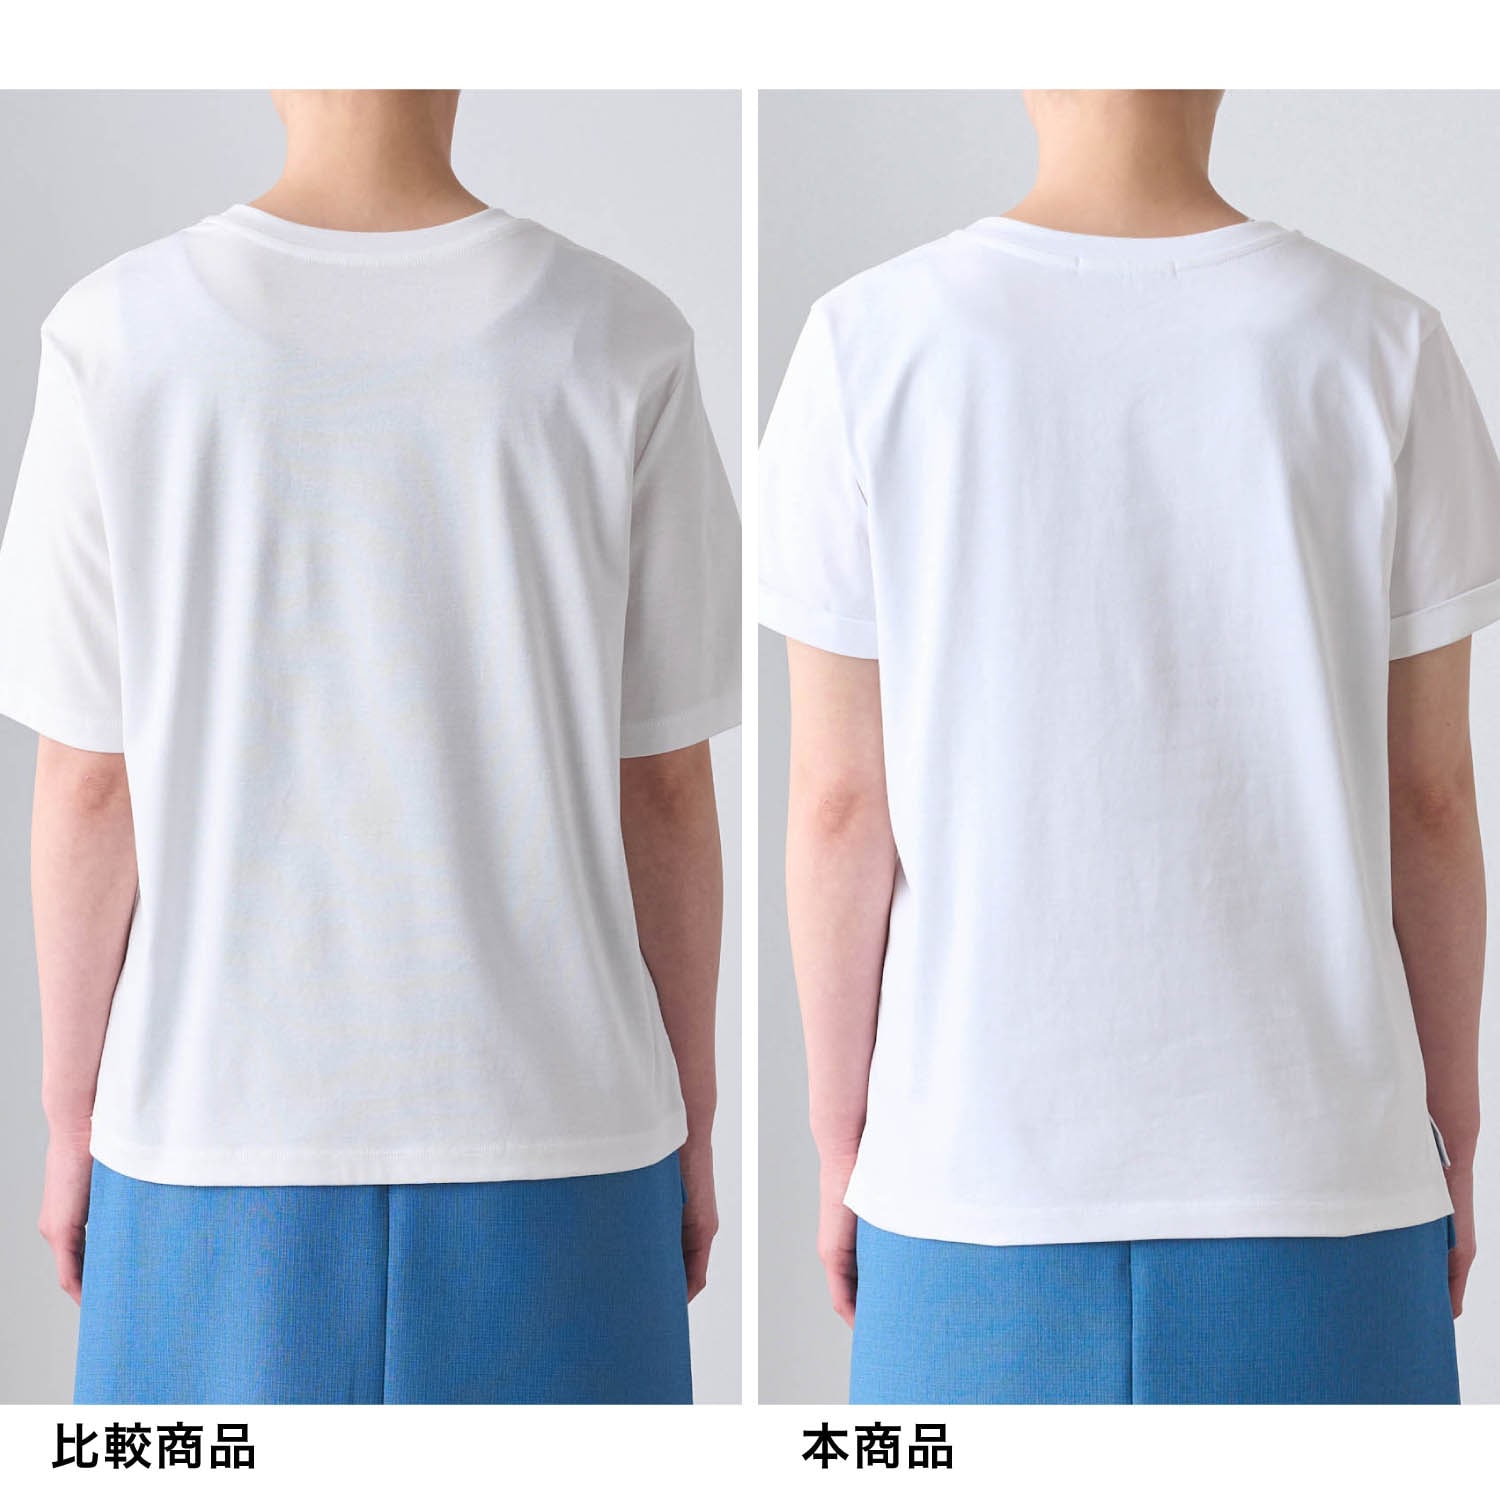 大人女性のために仕立てた理想の白Tシャツ［日本製］